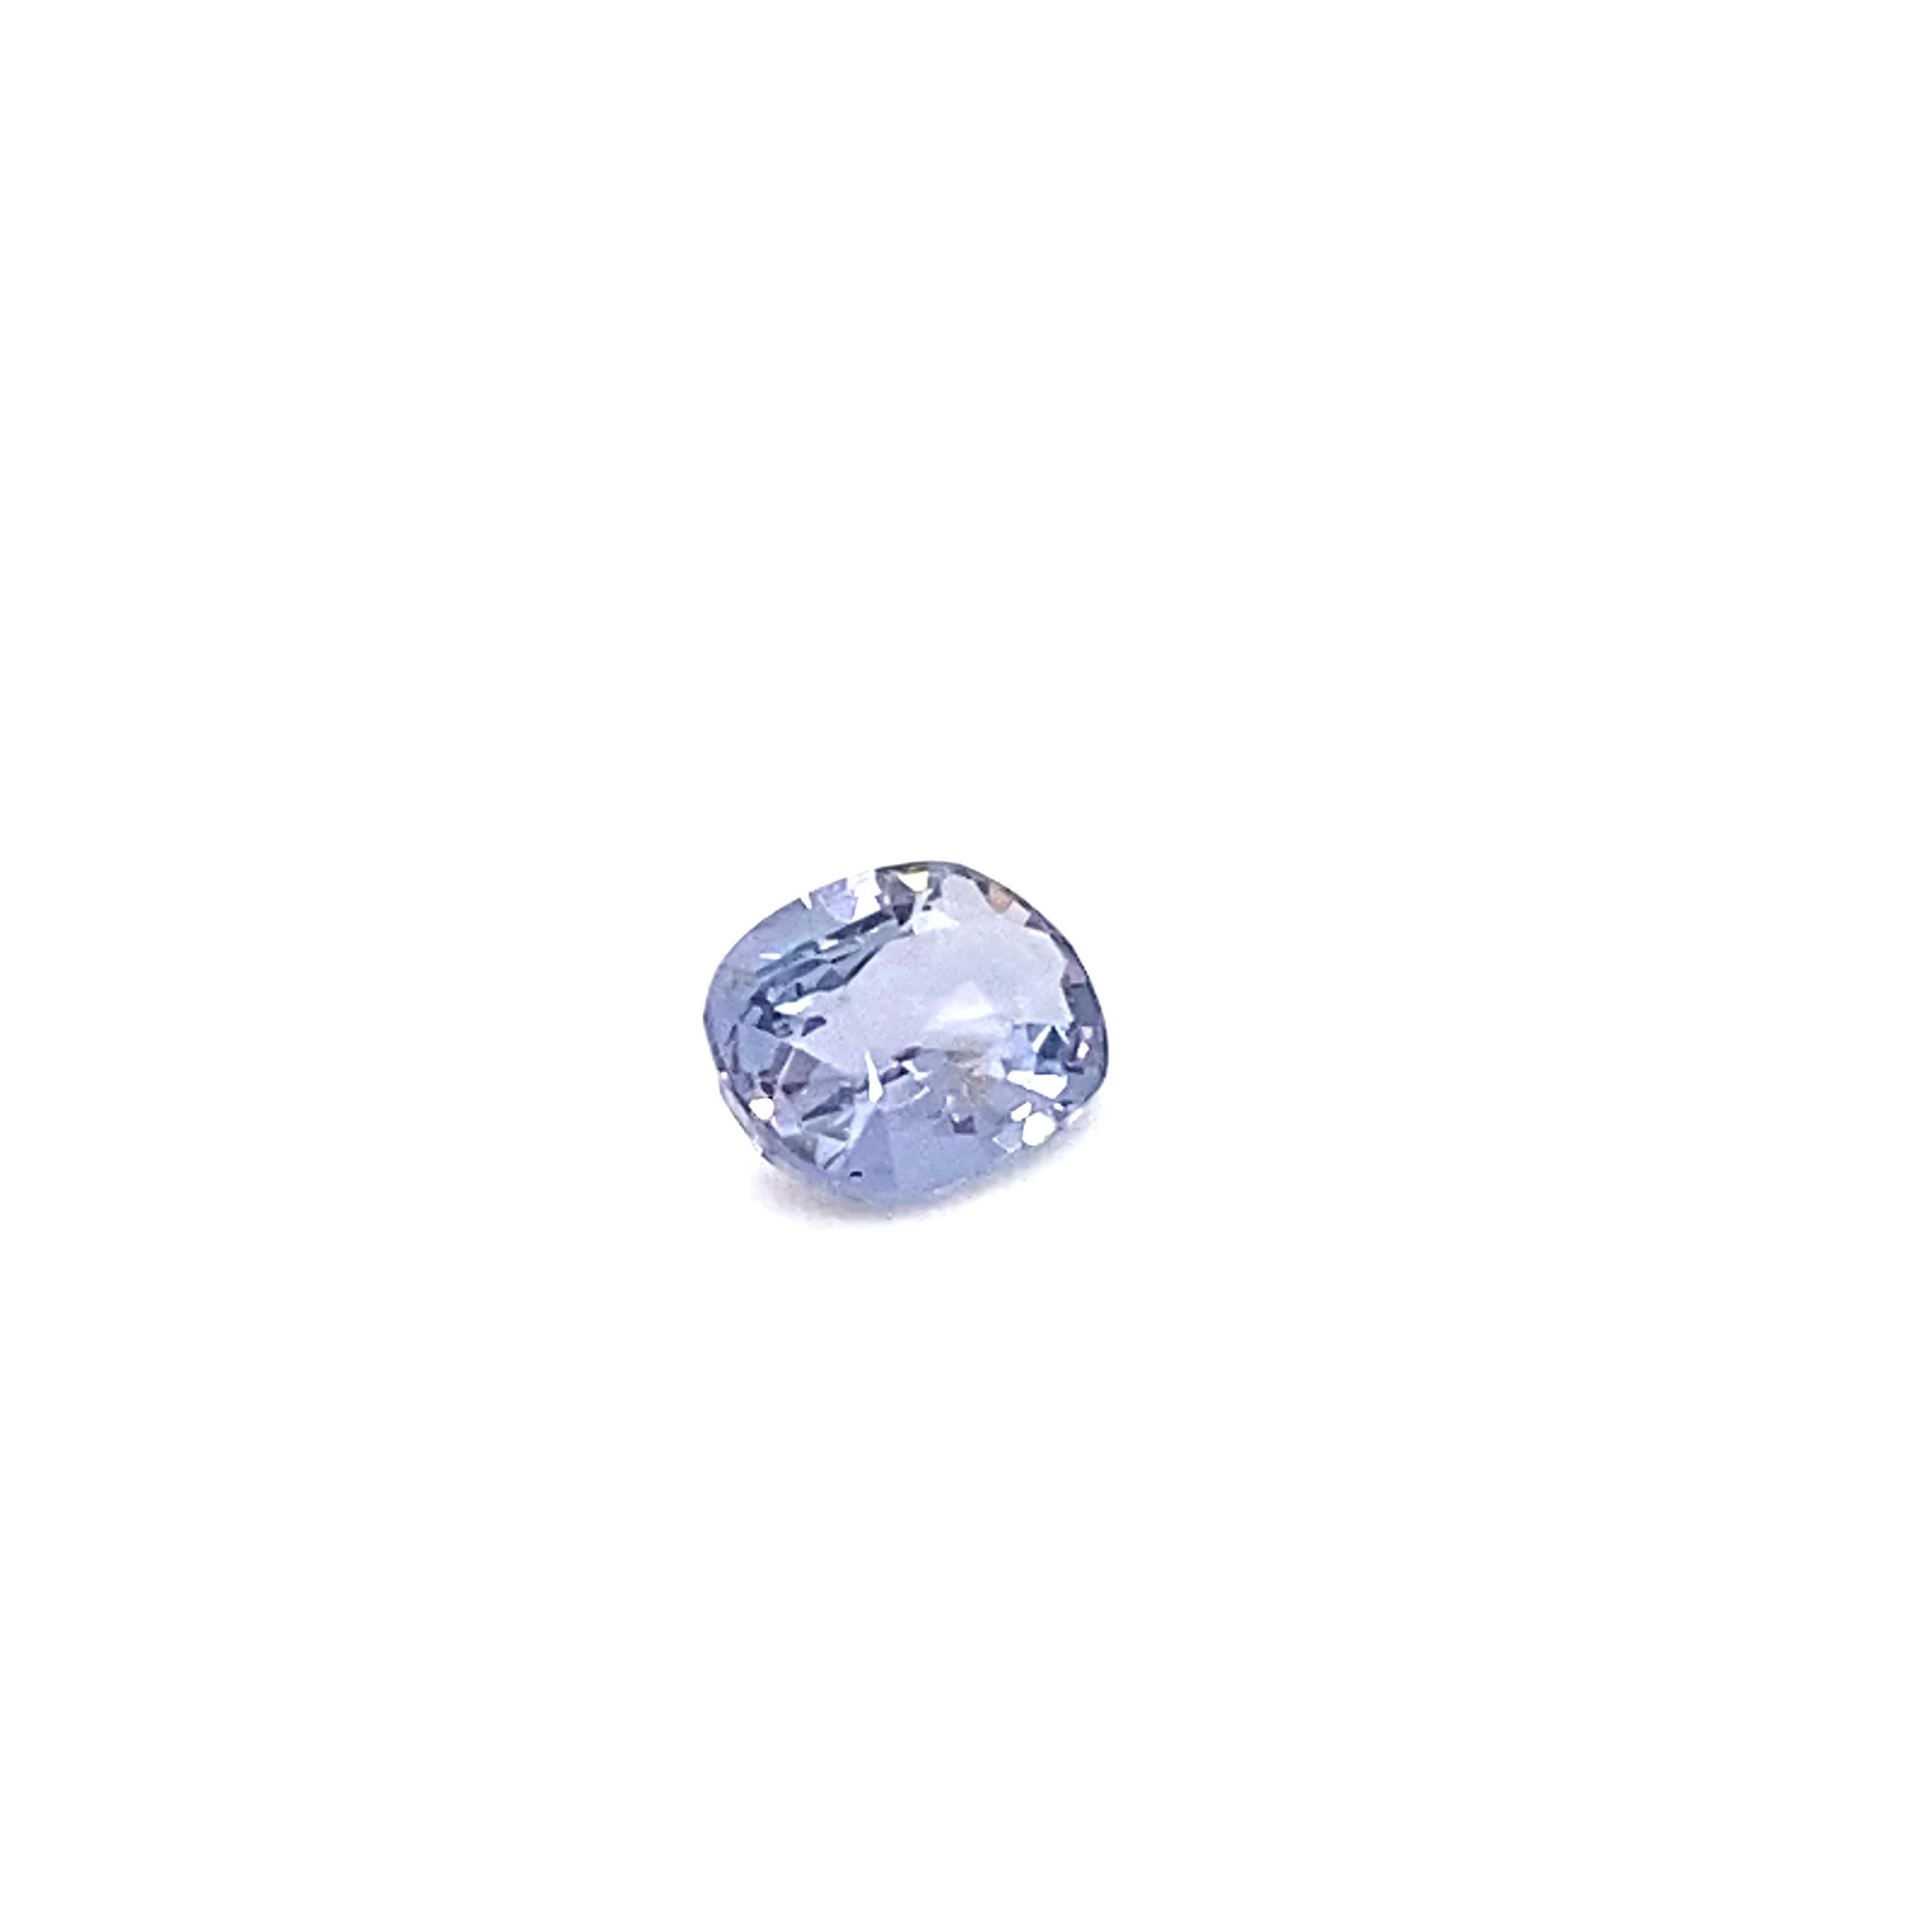 Oval Cut 1.6 Carat Oval Shape Natural Violet Spinel Loose Gemstone For Sale